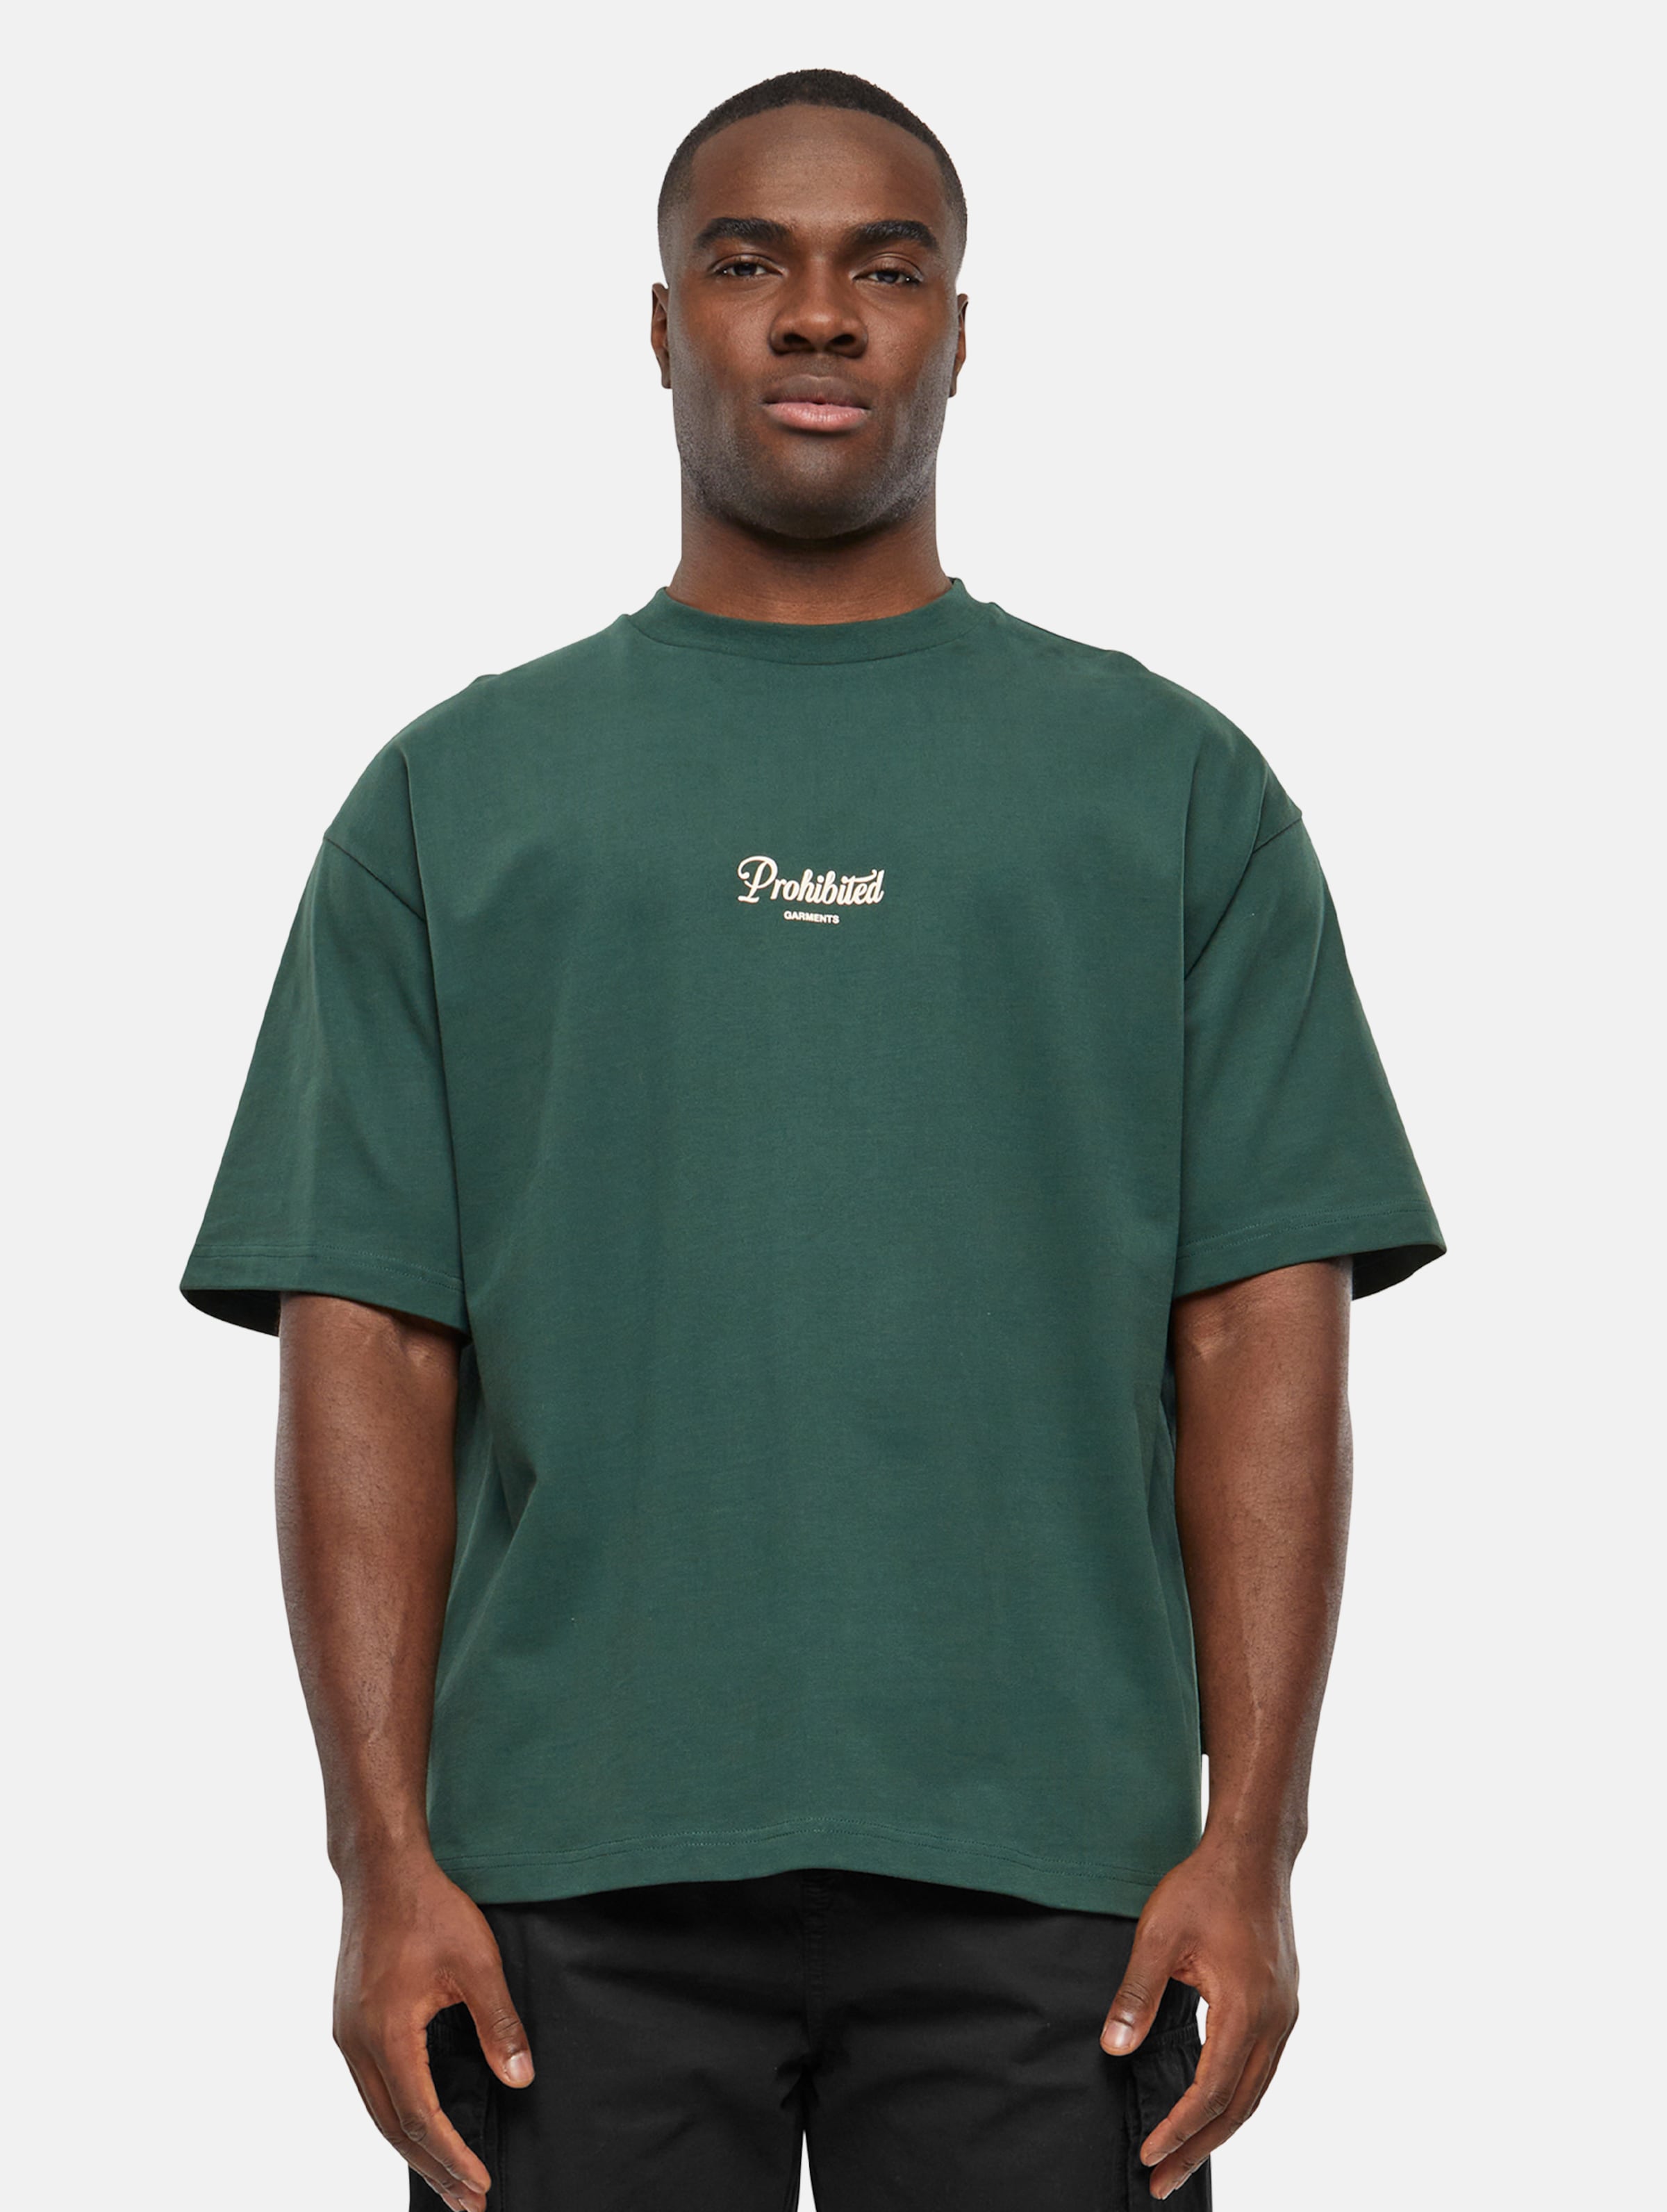 Prohibited PB Garment T Shirts Männer,Unisex op kleur groen, Maat M